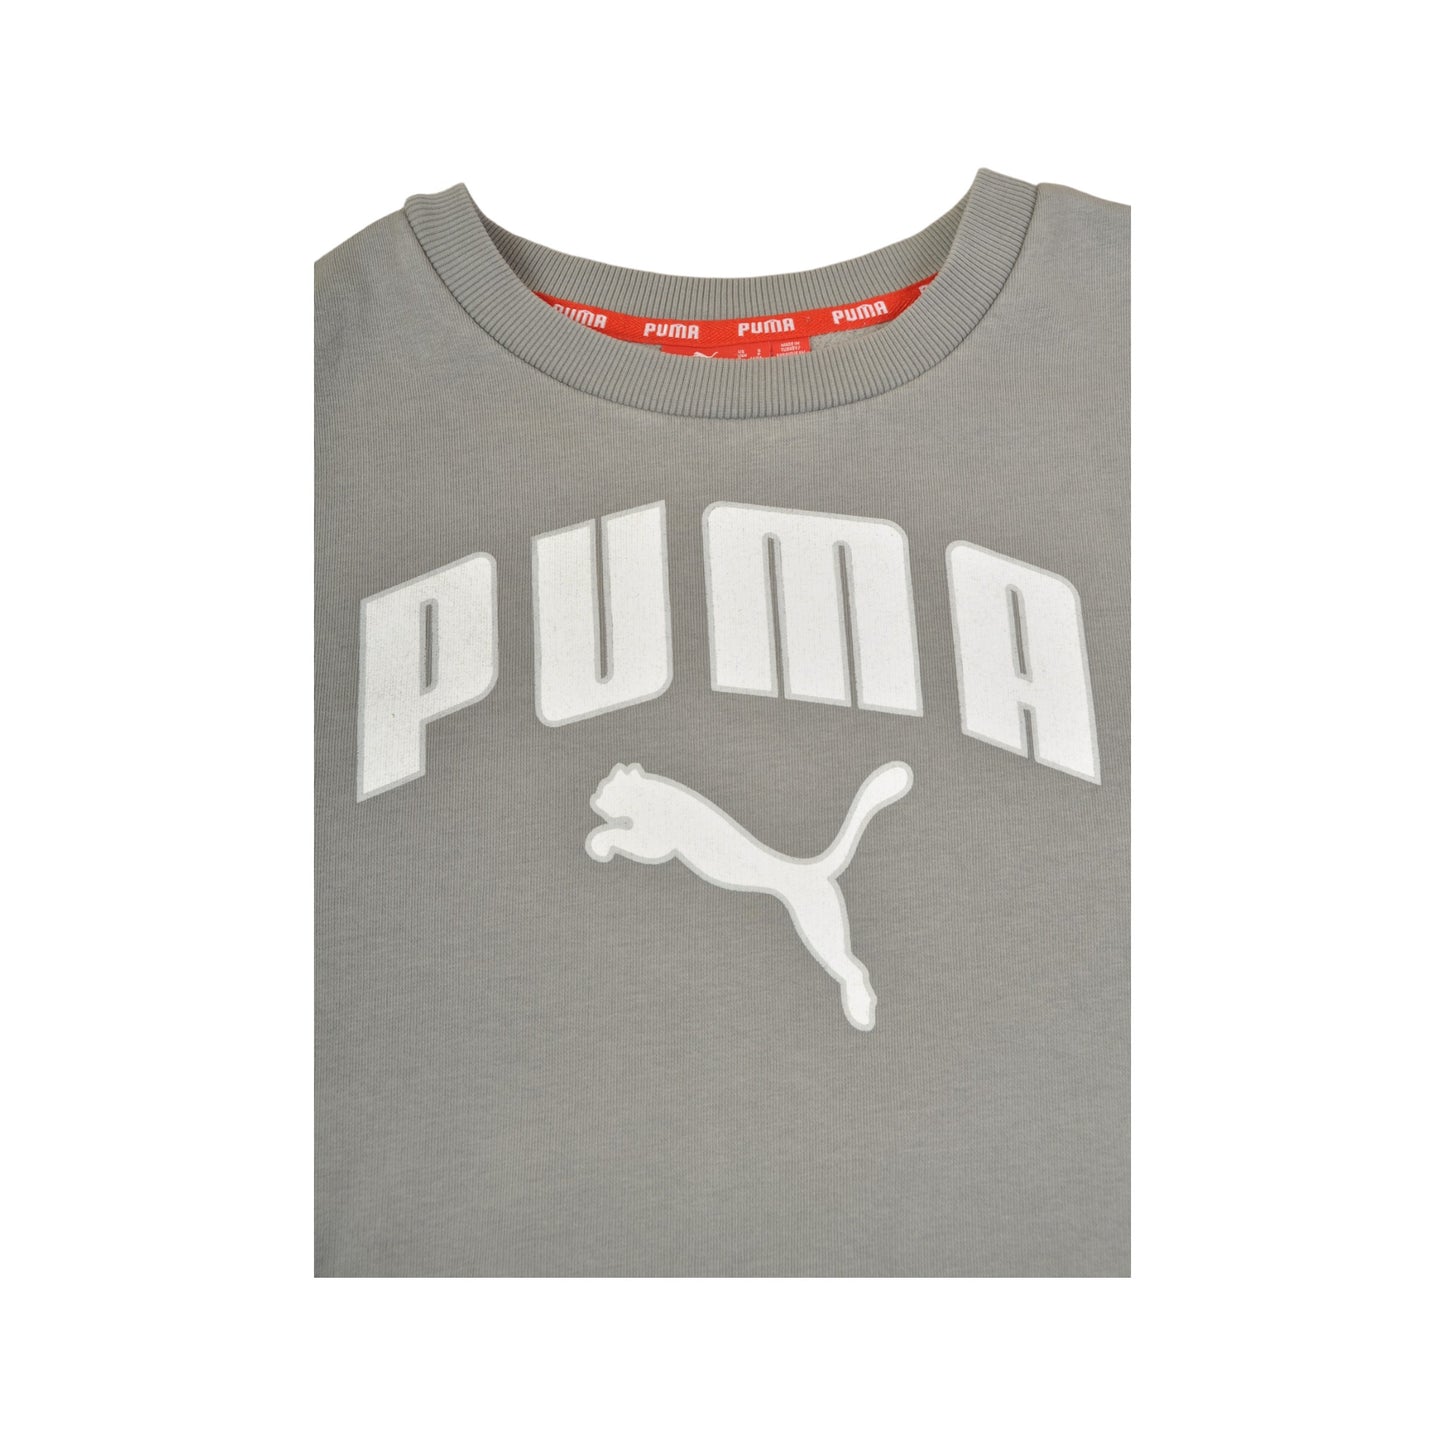 Vintage Puma Crewneck Sweatshirt Grey Small